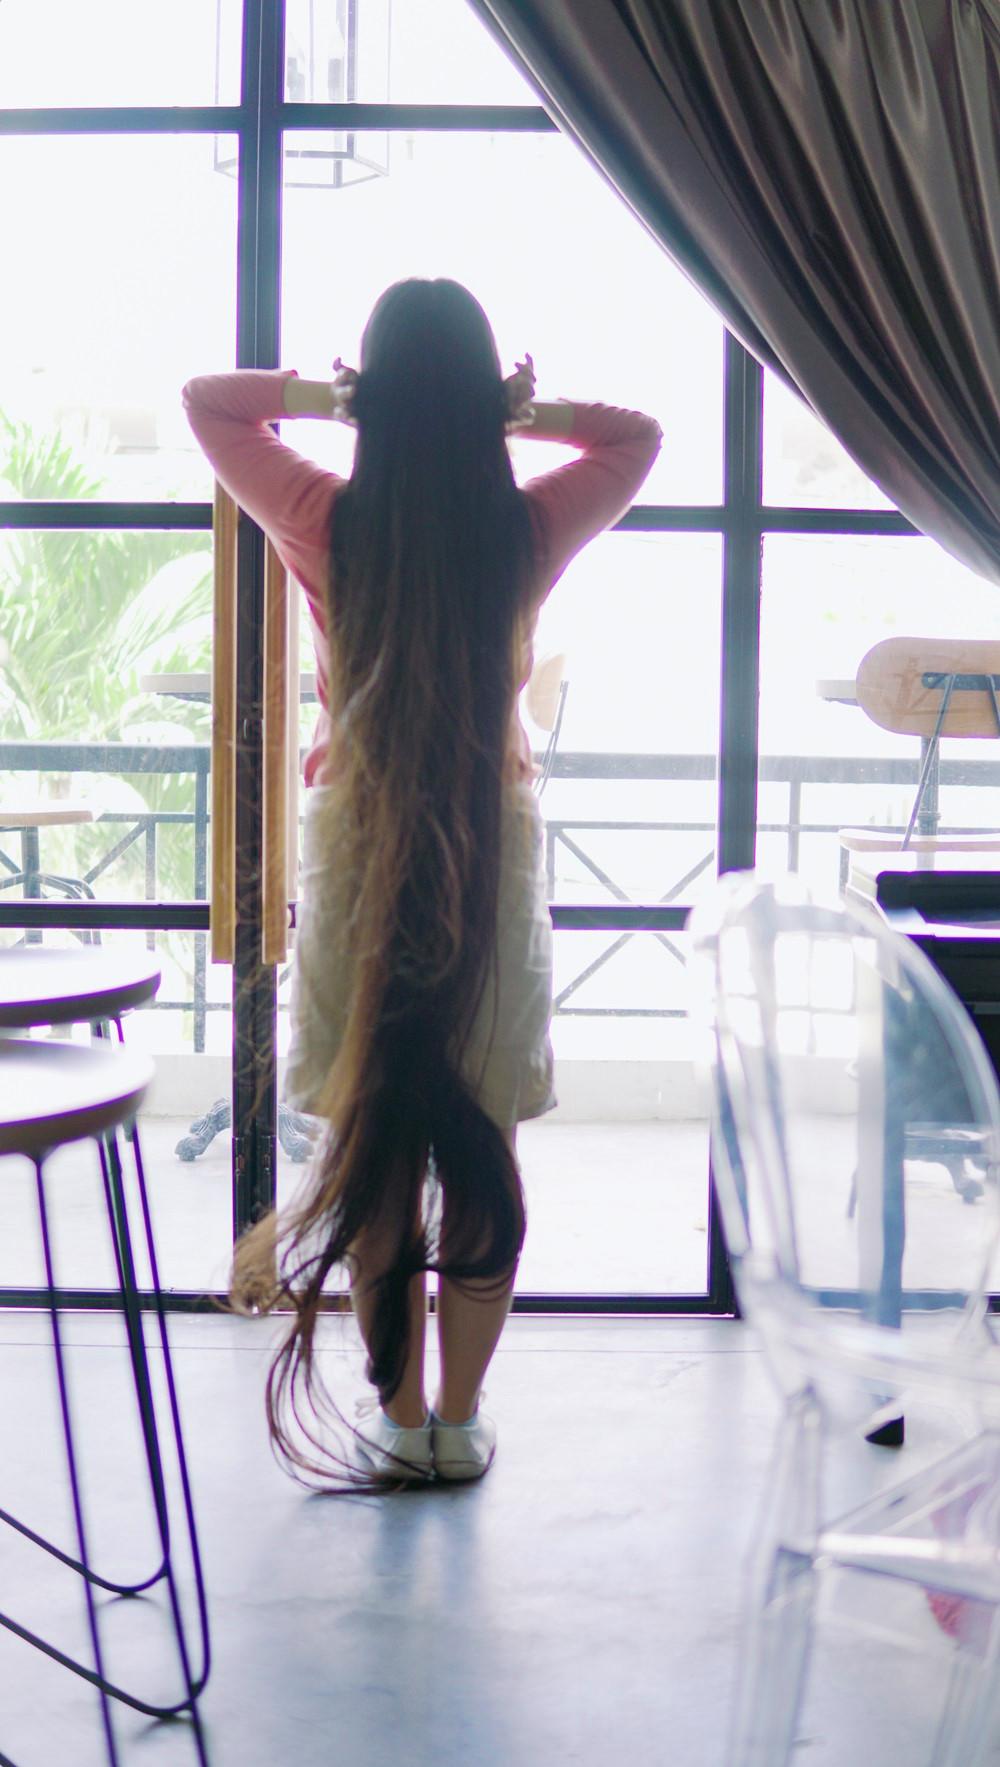 9X Sài Gòn kiếm chục triệu mỗi tháng nhờ có mái tóc dài 2 m-4